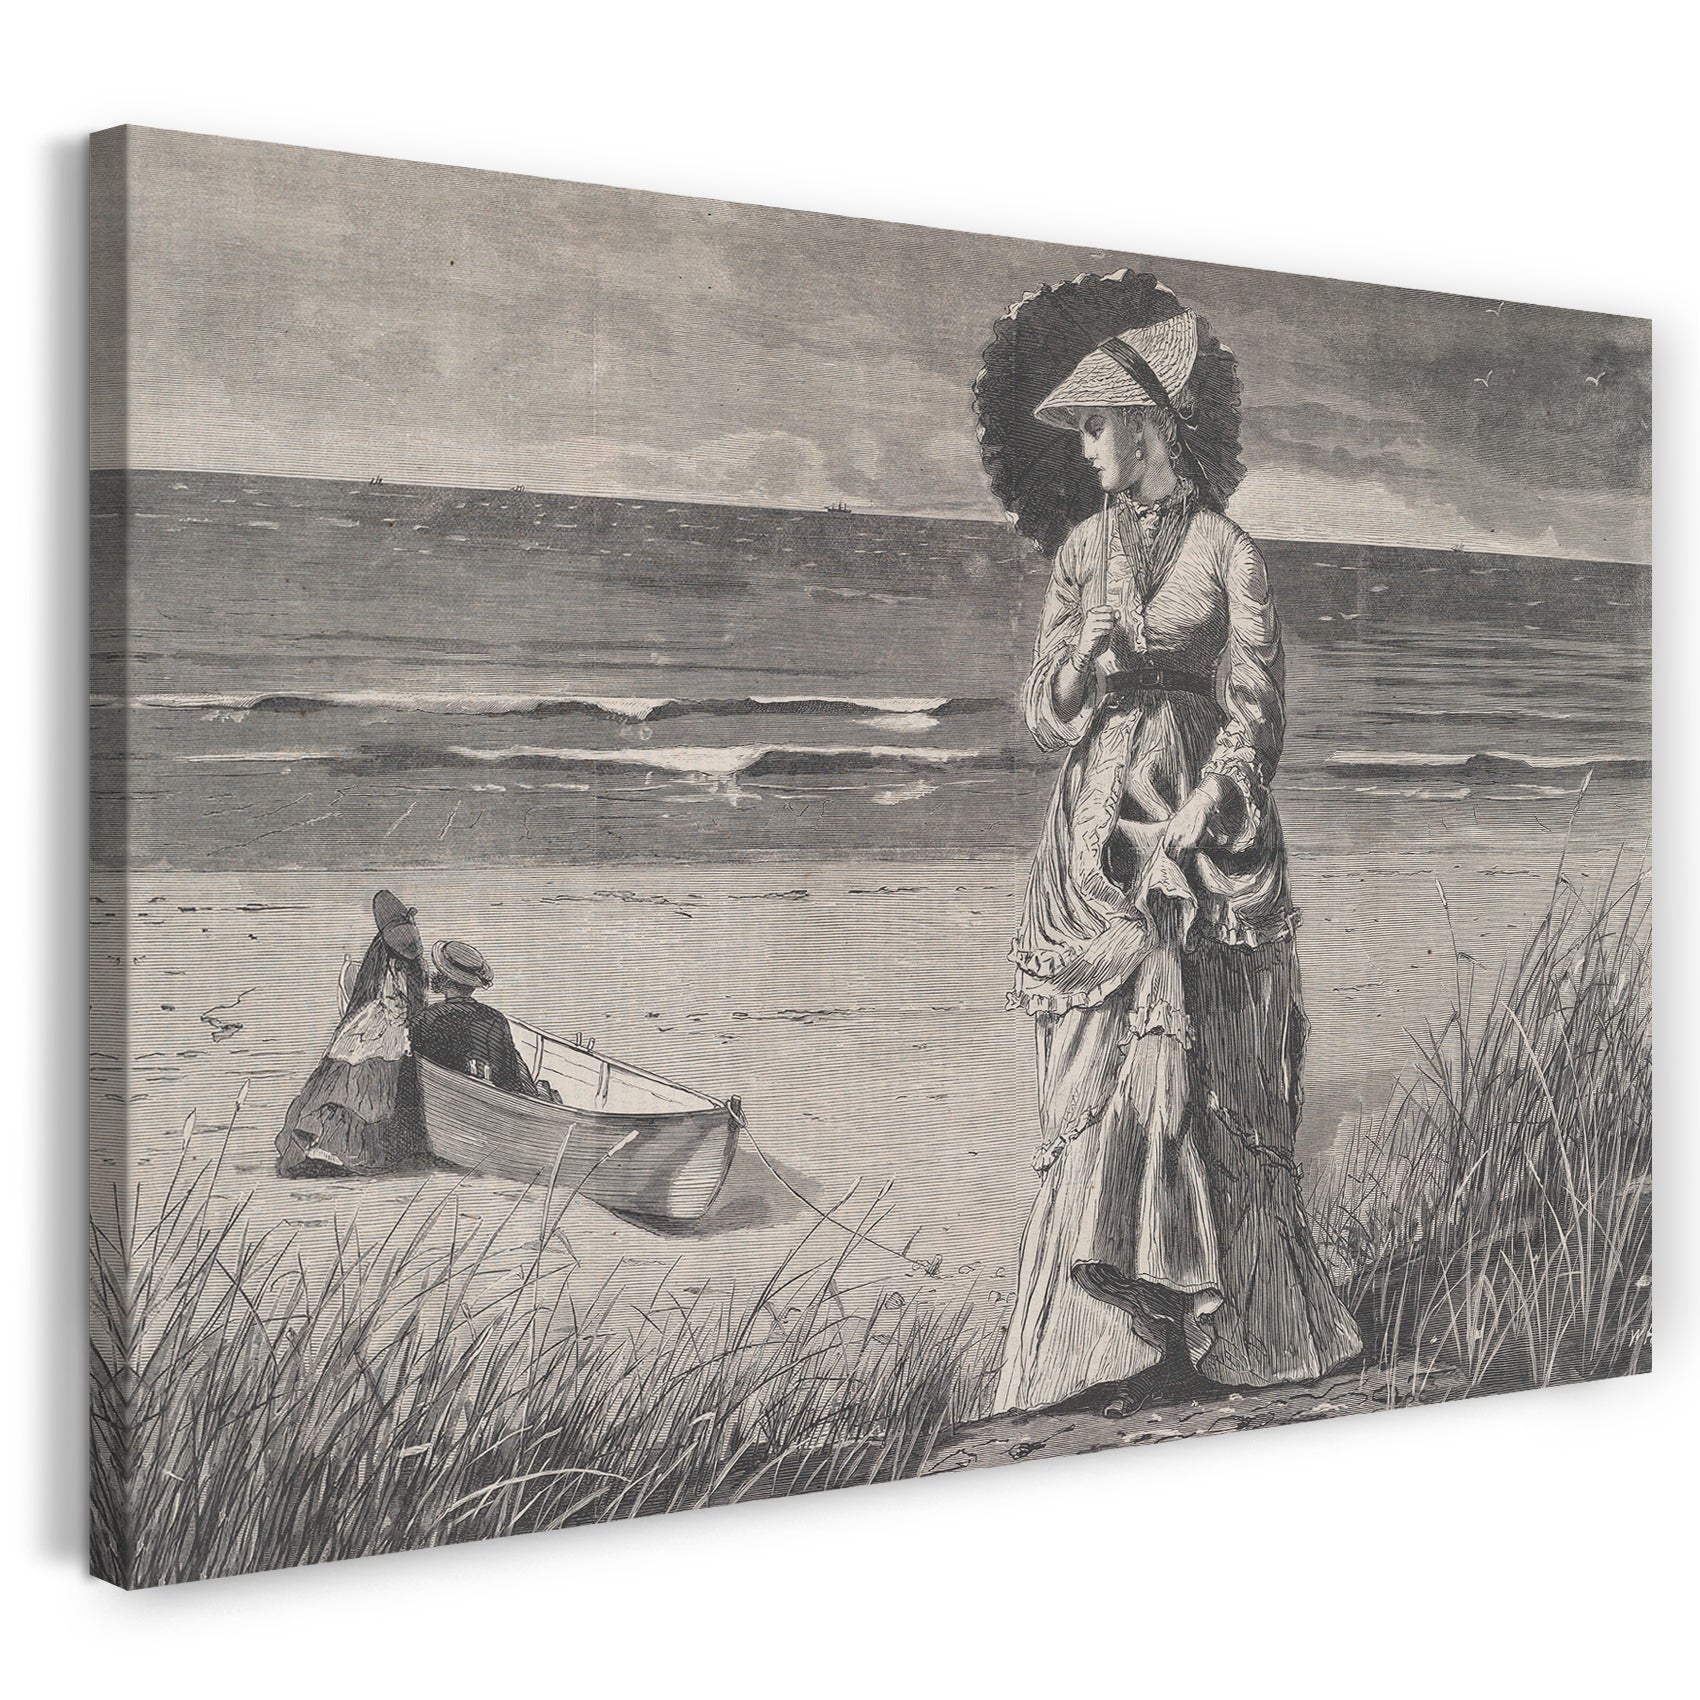 Leinwandbild Winslow Homer - Am Strand - Zwei sind Begleitung, drei sind keine - Gezeichnet von Winslow Homer (Harper's Weekly, Vol. XVI)